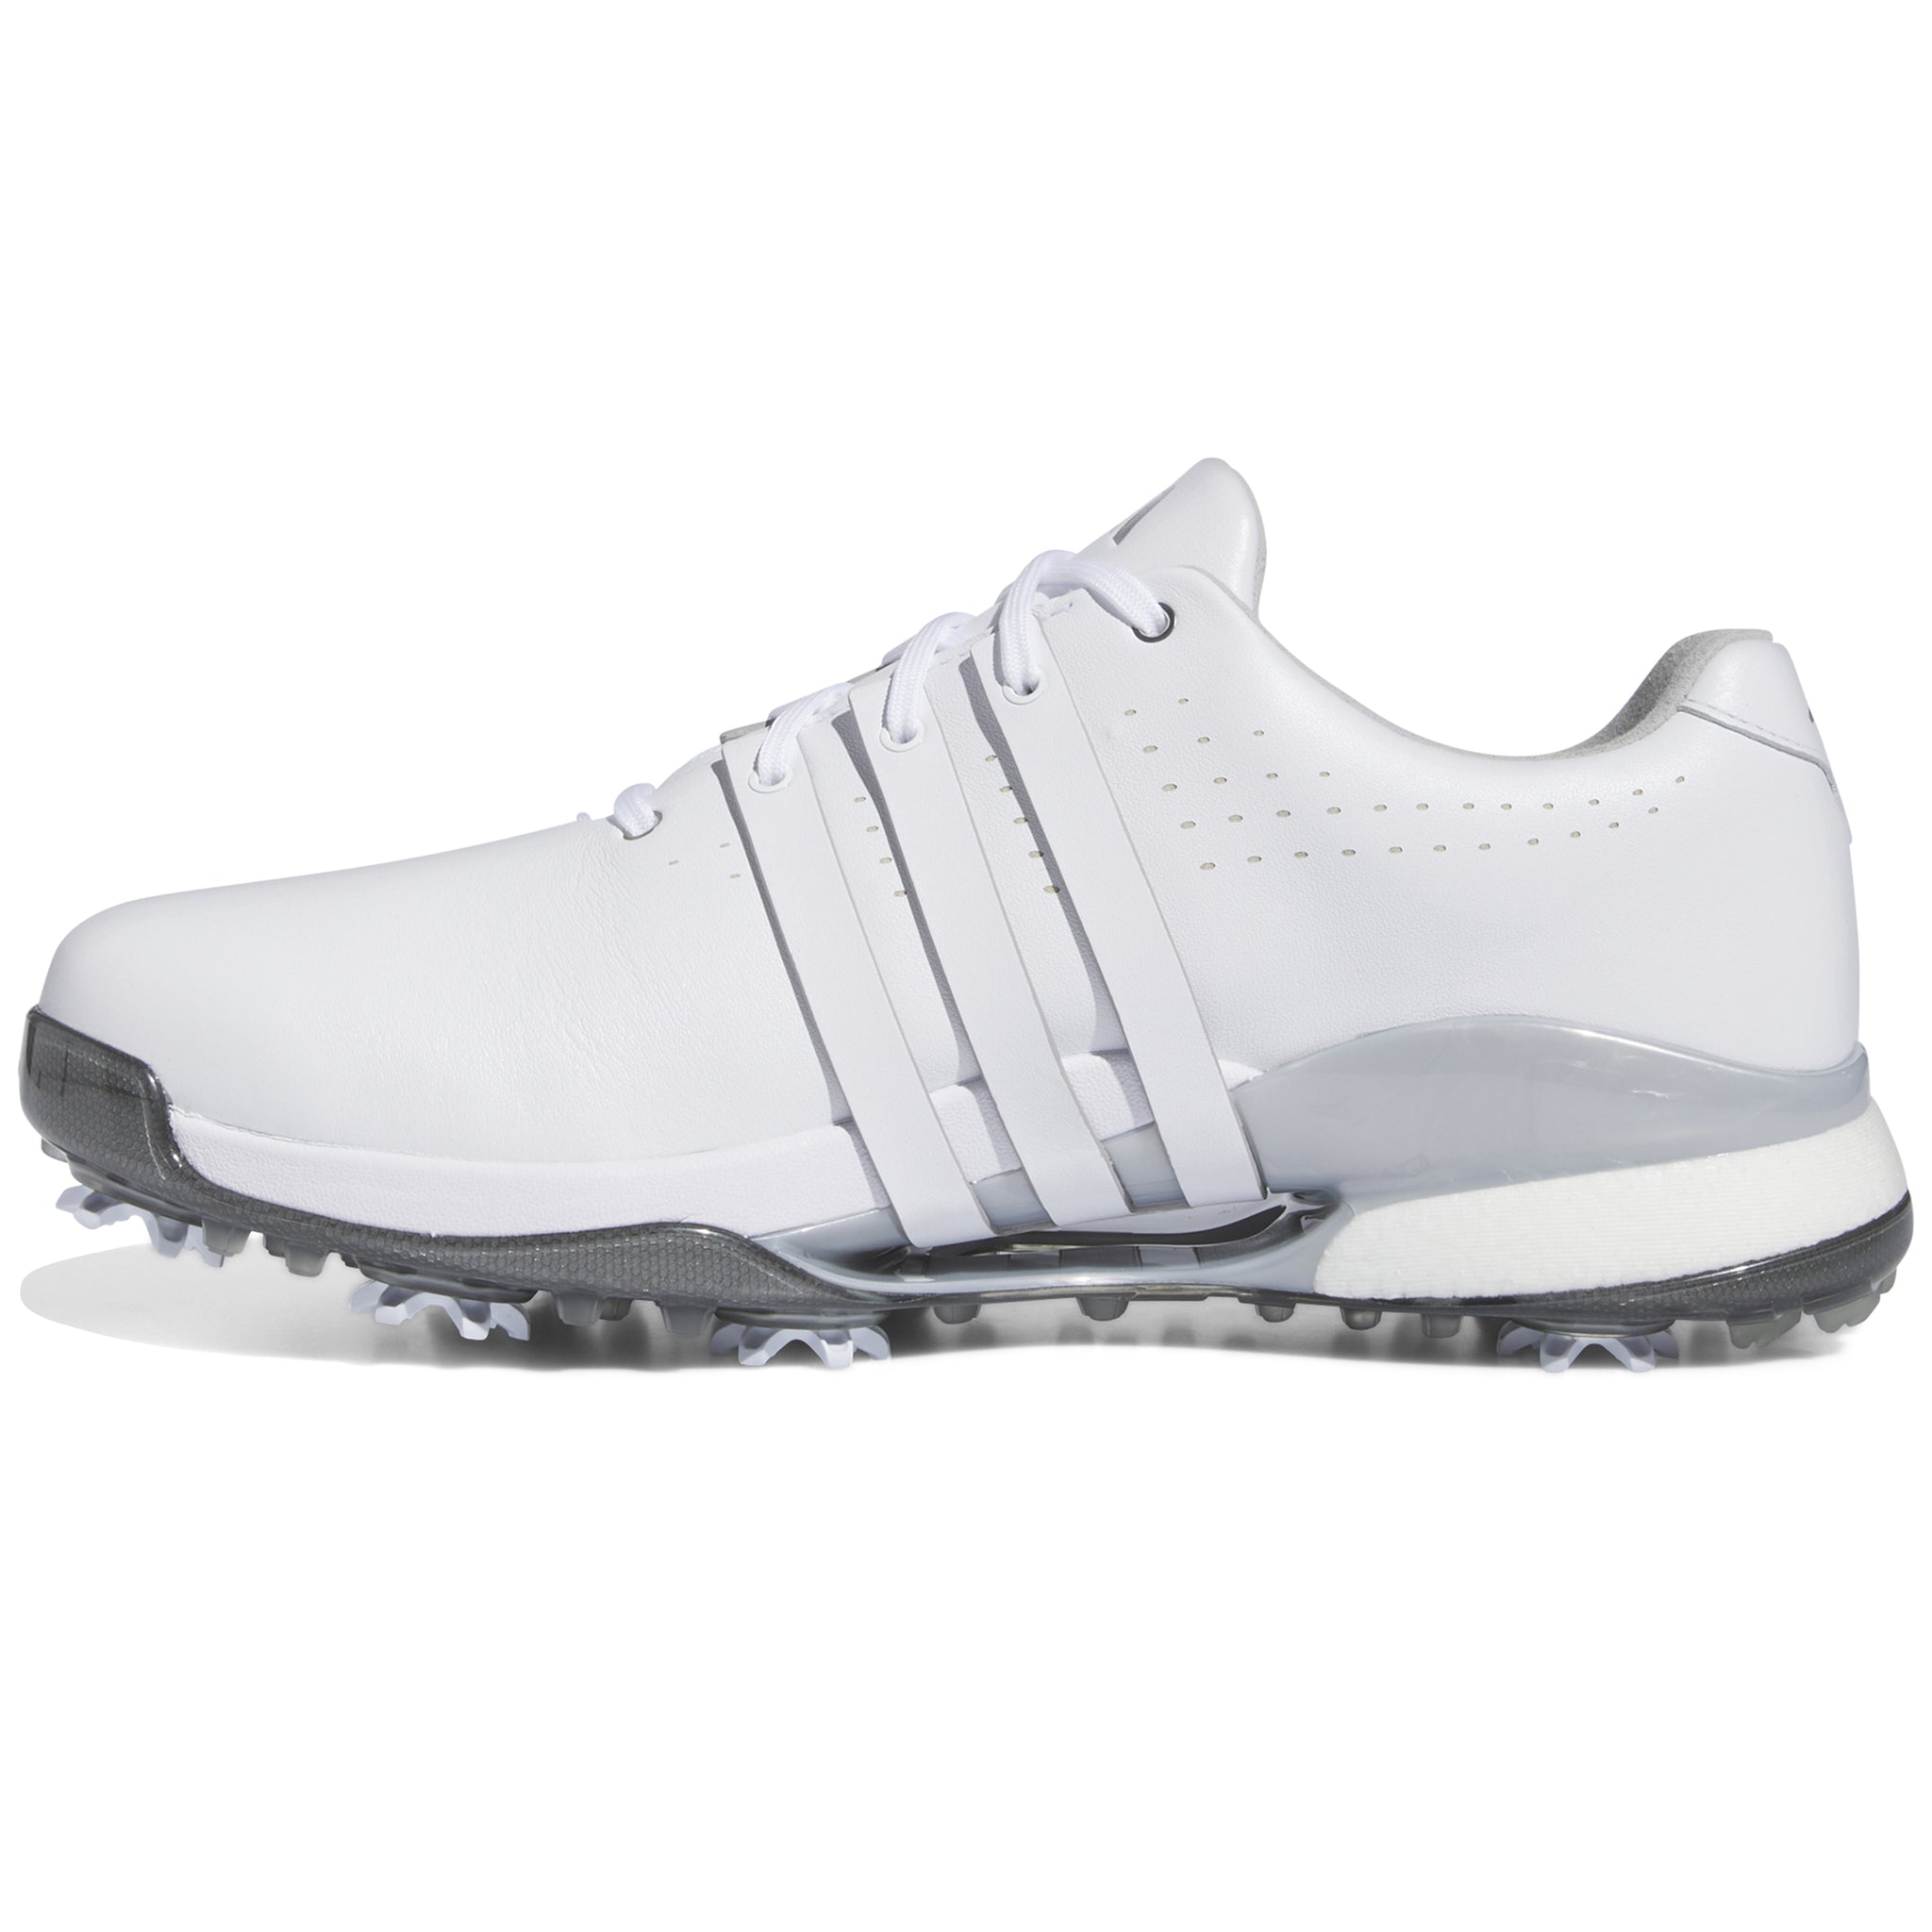 adidas-tour360-24-golf-shoes-if0248-white-silver-metallic